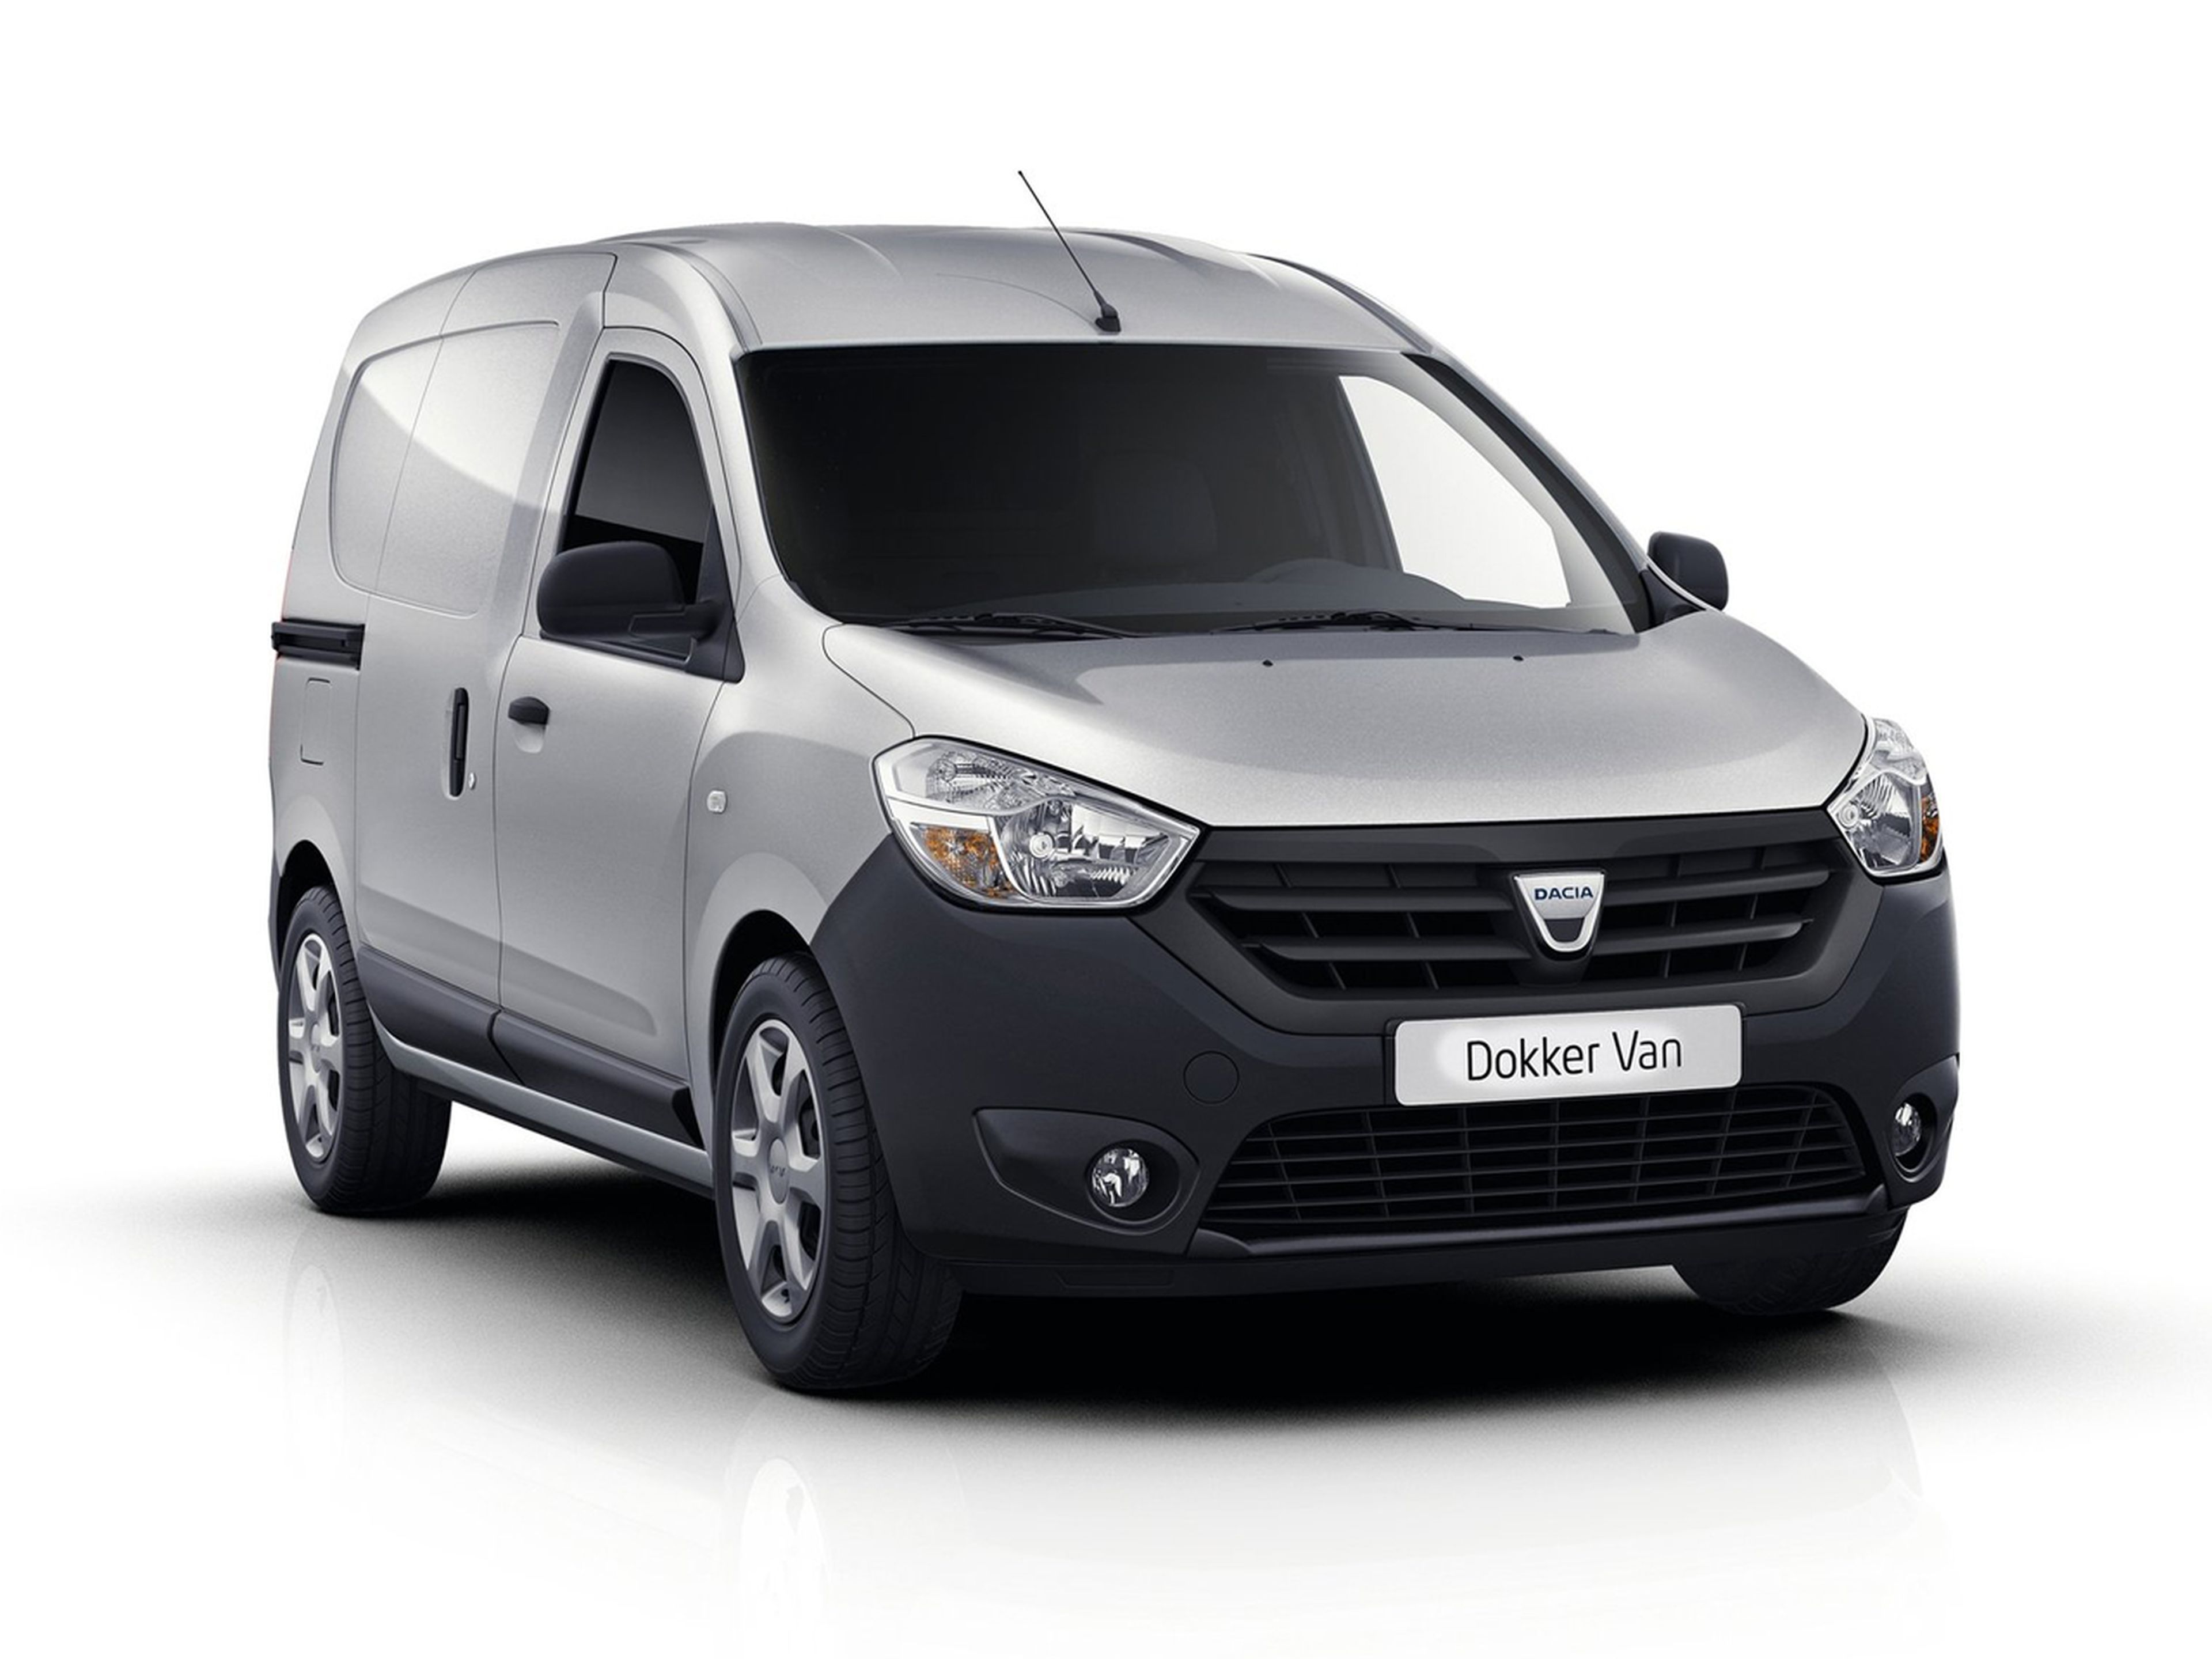 Dacia Dokker Van 2012: Motorizaciones y datos técnicos